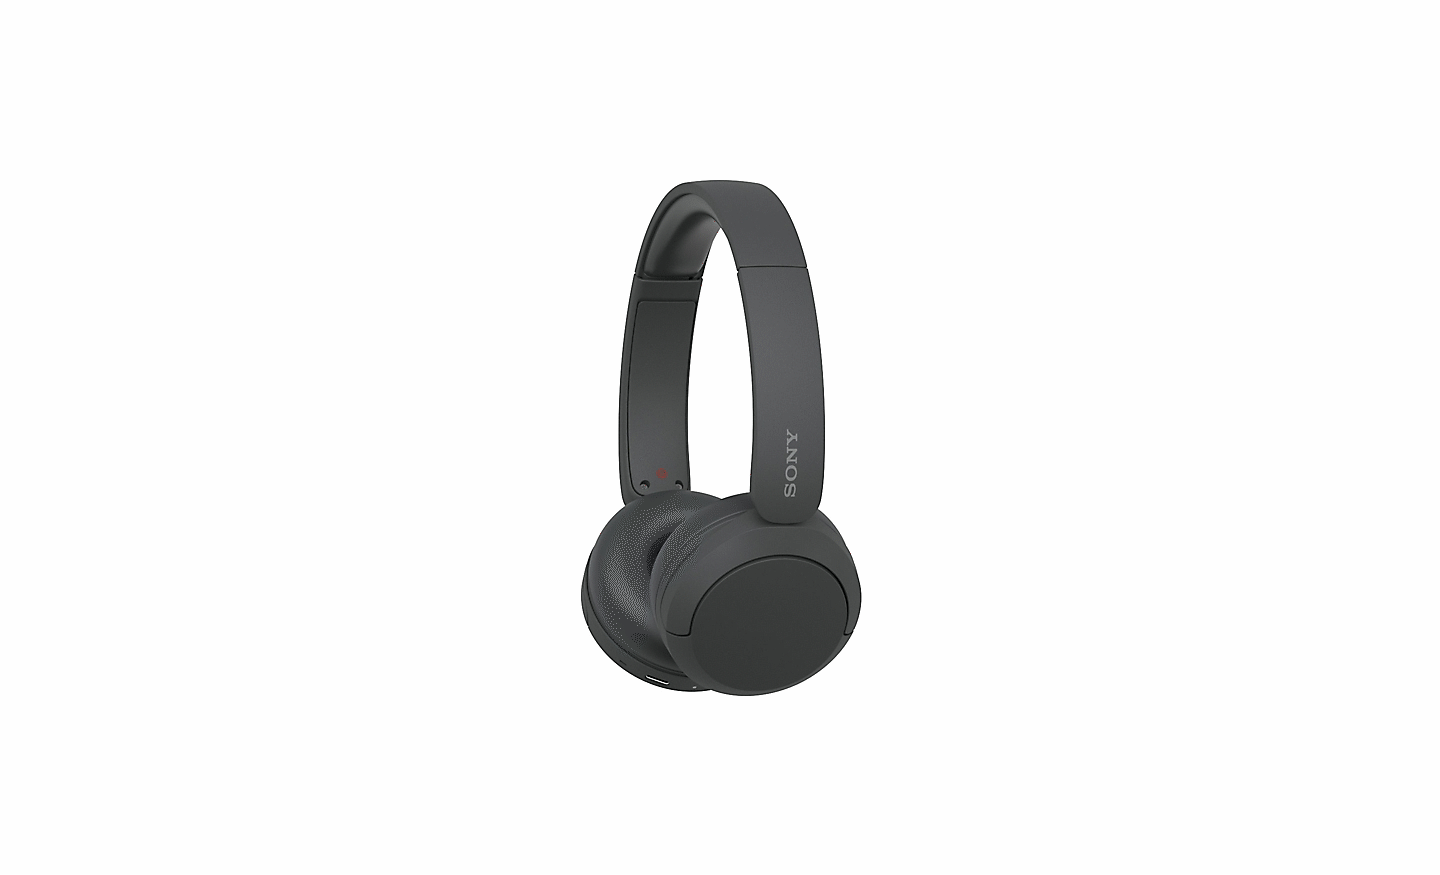 Immagine di un paio di cuffie WH-CH520 nere di Sony su sfondo bianco